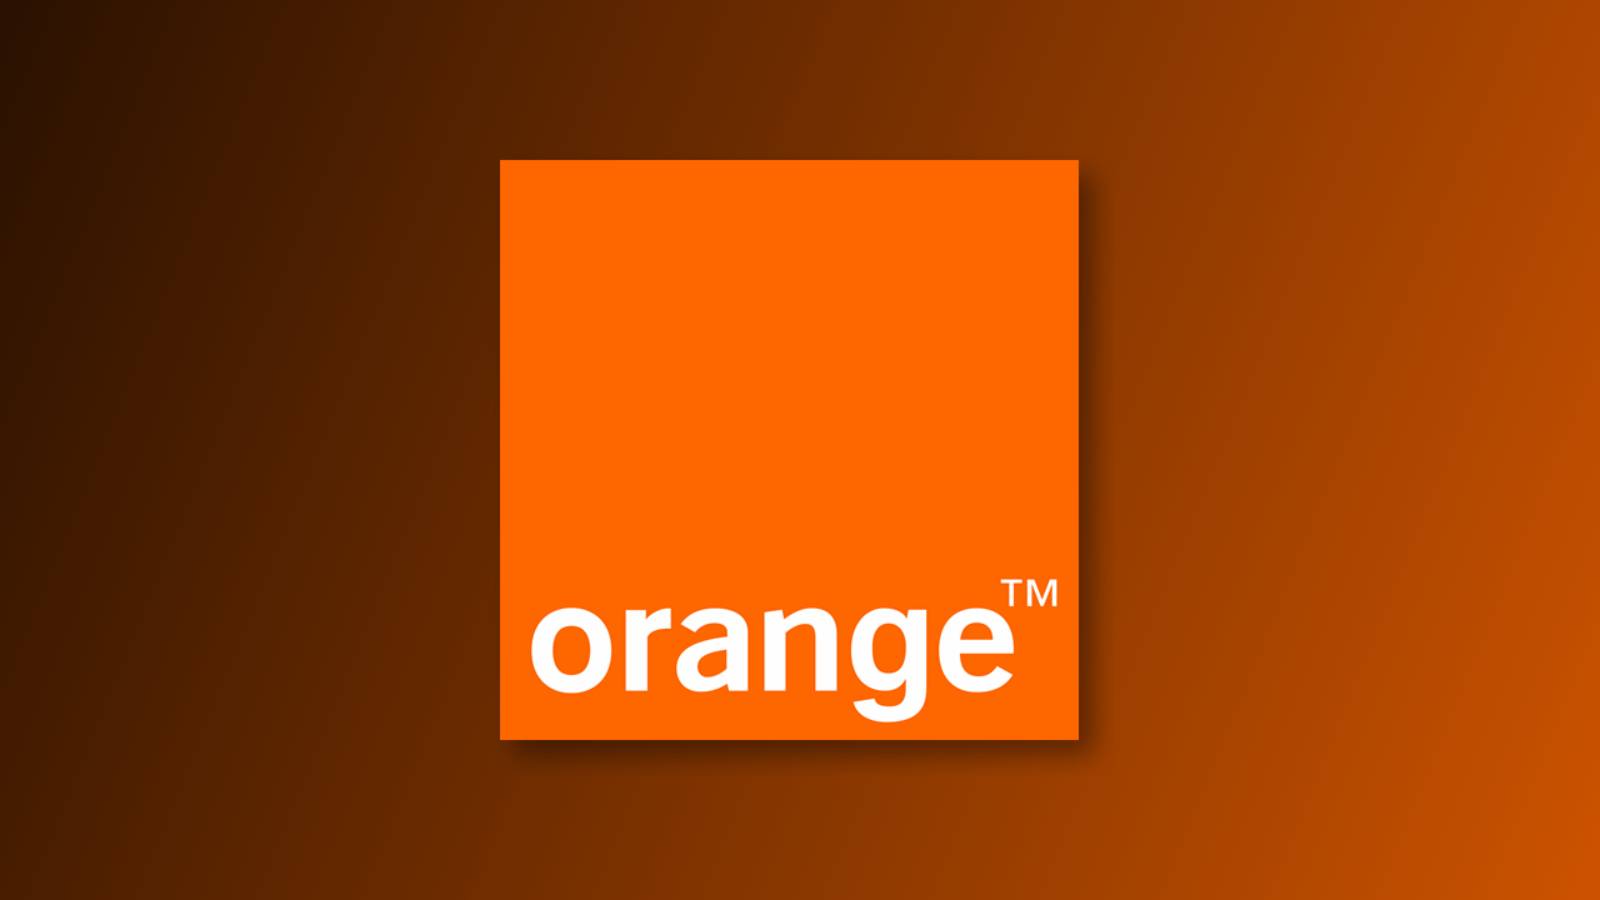 Orange discovery